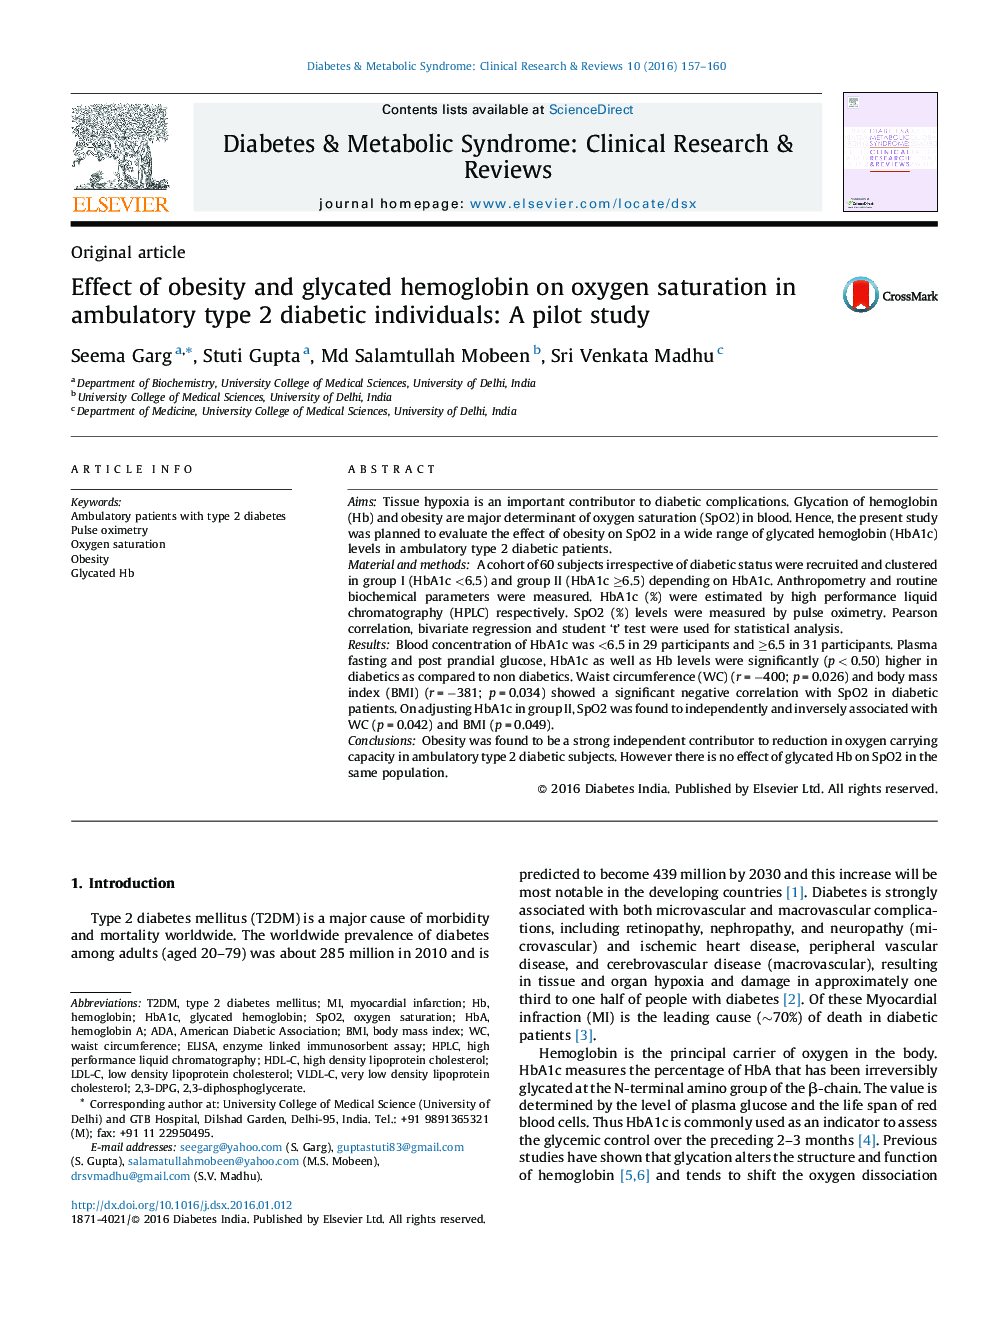 تأثیر چاقی و هموگلوبین گلیکوزیله بر اشباع اکسیژن در افراد دیابتی نوع 2: یک مطالعه آزمایشی